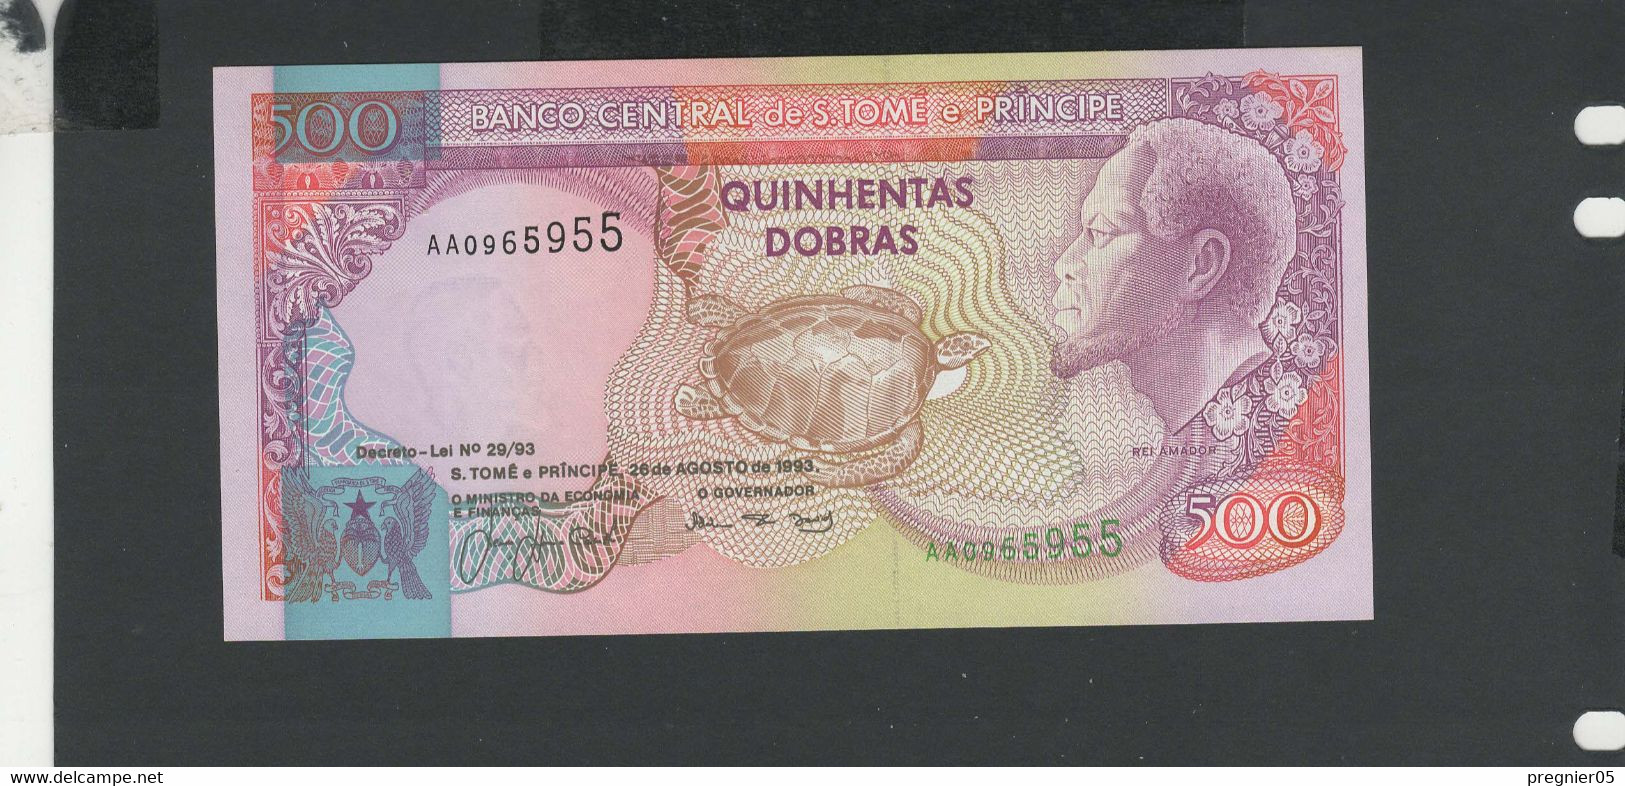 SAO TOME E PRINCIPE - Billet 500 Dobras 1993 NEUF Pick.63 - São Tomé U. Príncipe